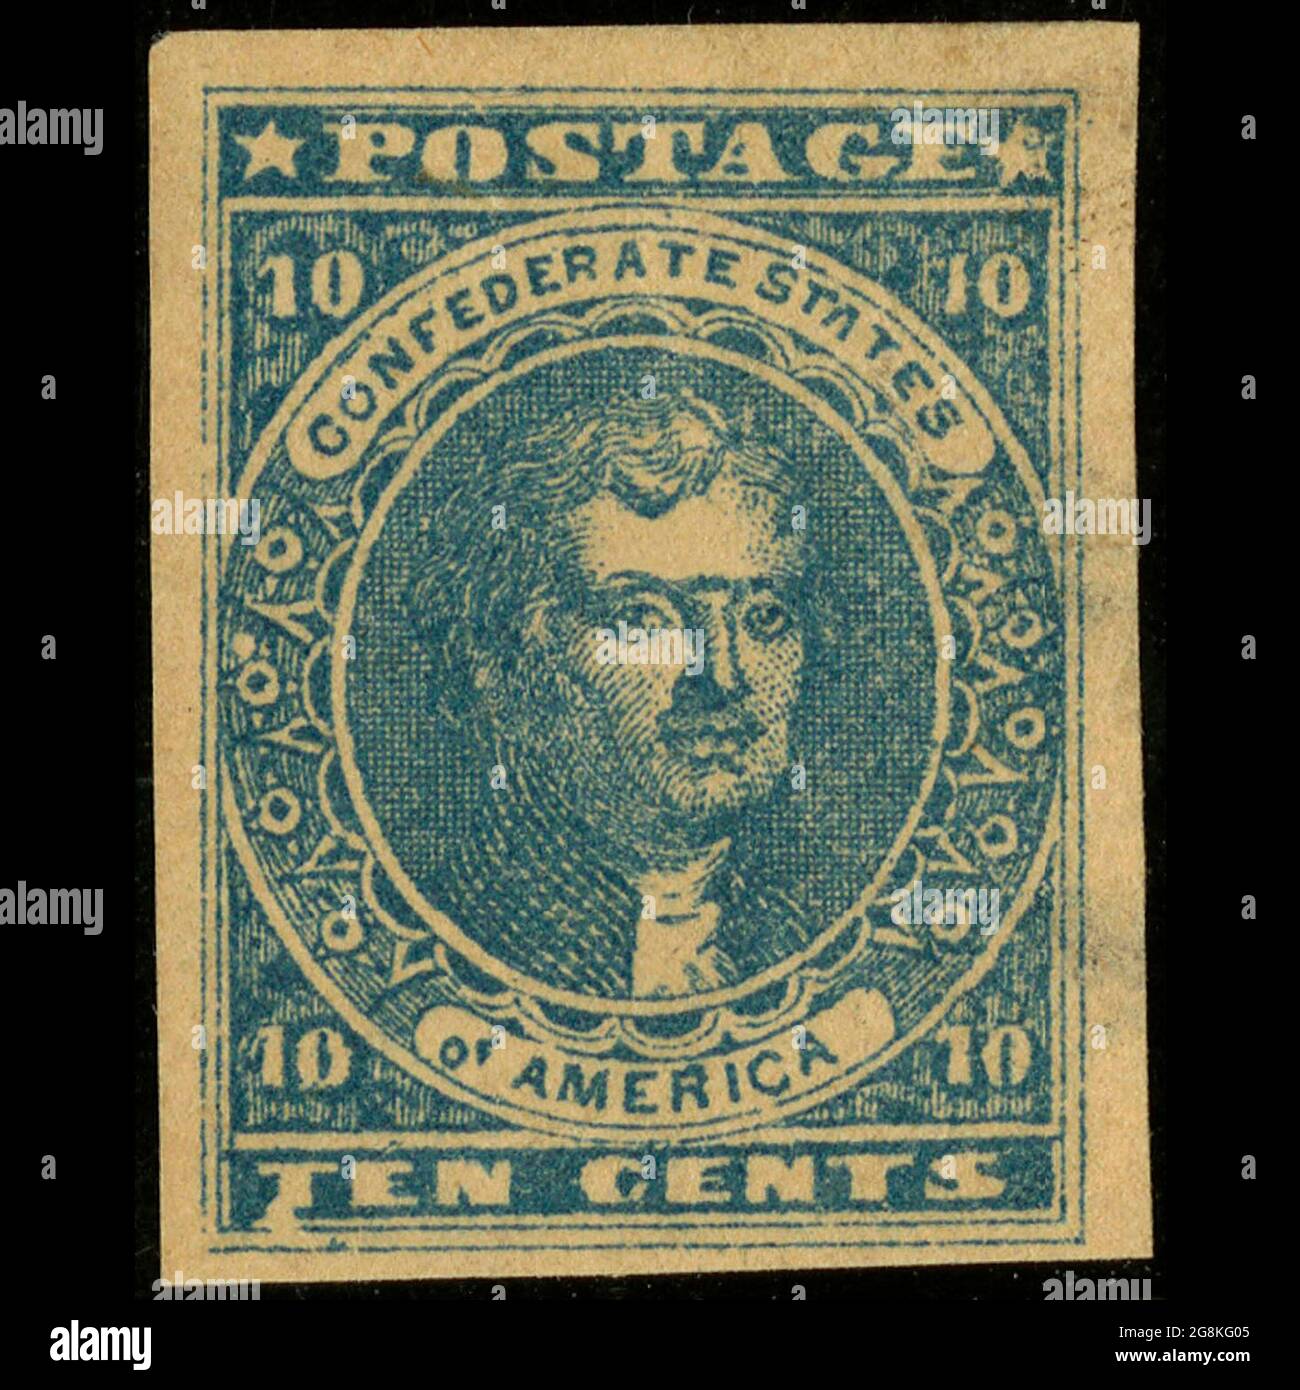 Timbres-poste confédérés, 10 cents bleus, numéro général 1861, type 2 le timbre postal représente Thomas Jefferson imprimé en bleu. Service postal des États confédérés d'Amérique. Banque D'Images